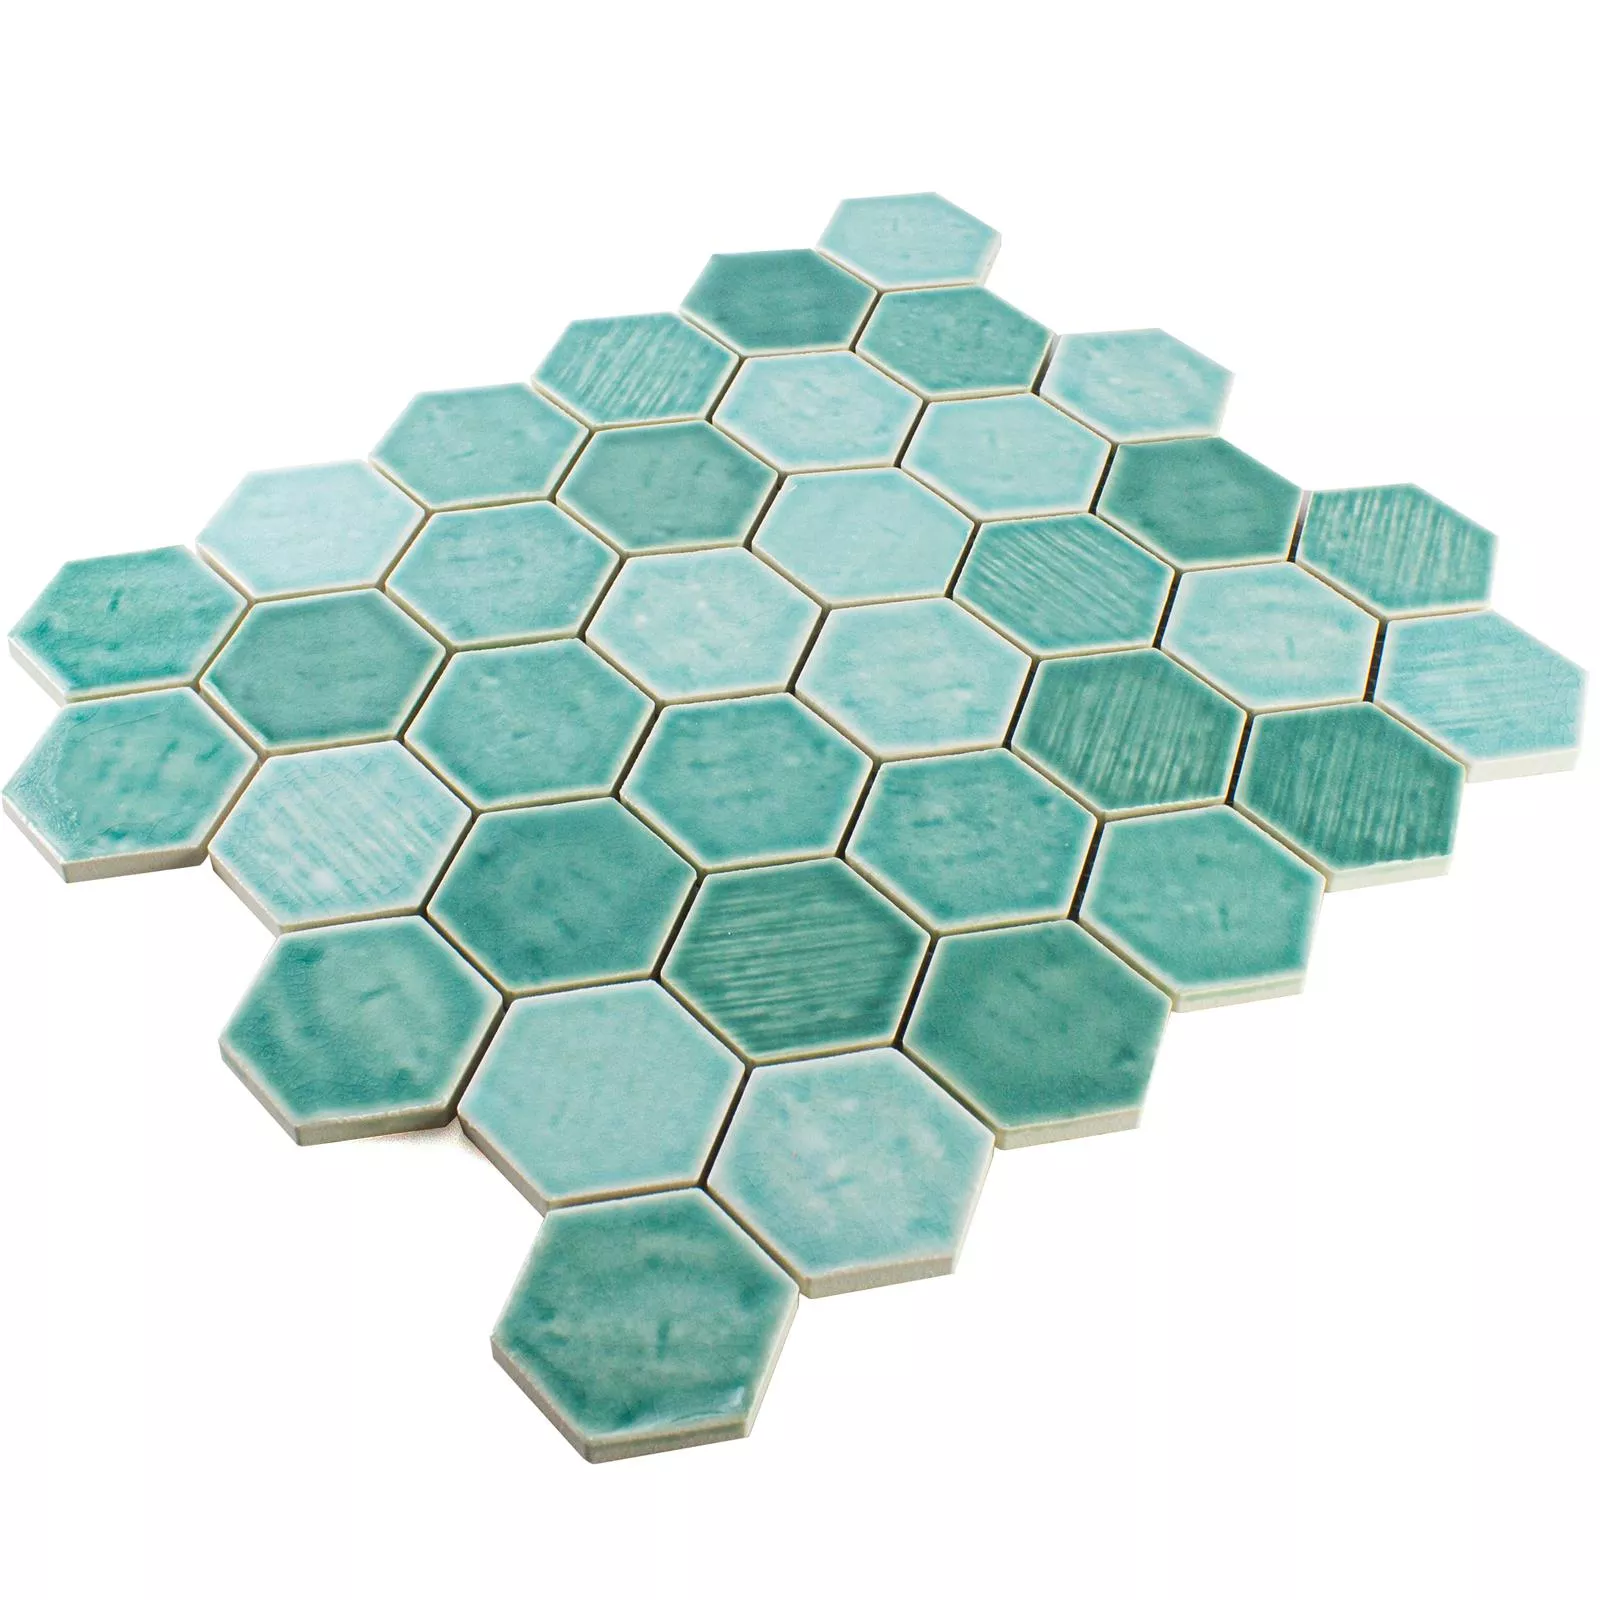 Muestra Cerámica Azulejos De Mosaico Roseburg Hexagonales Brillante Turquesa